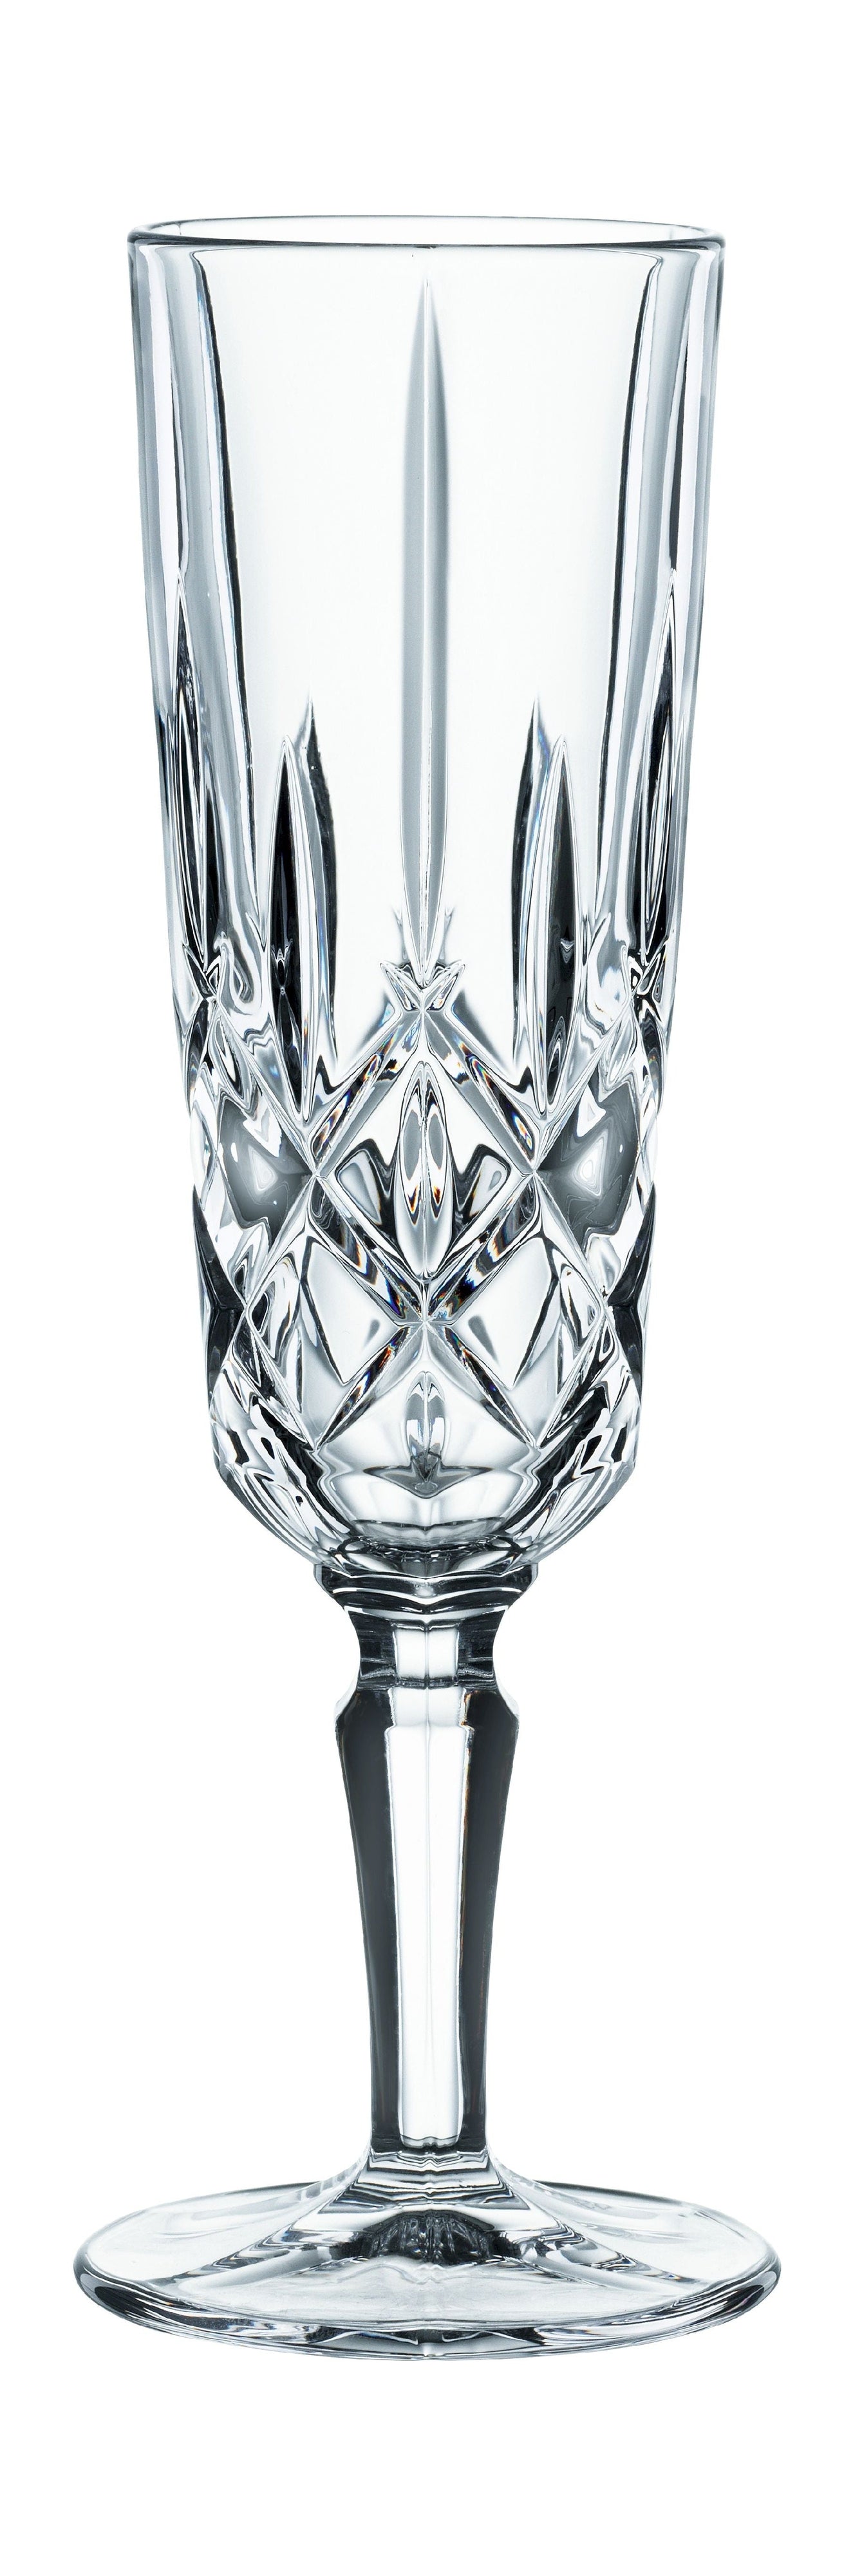 Nachtmann Noblesse Champagne Glass, uppsättning av 4